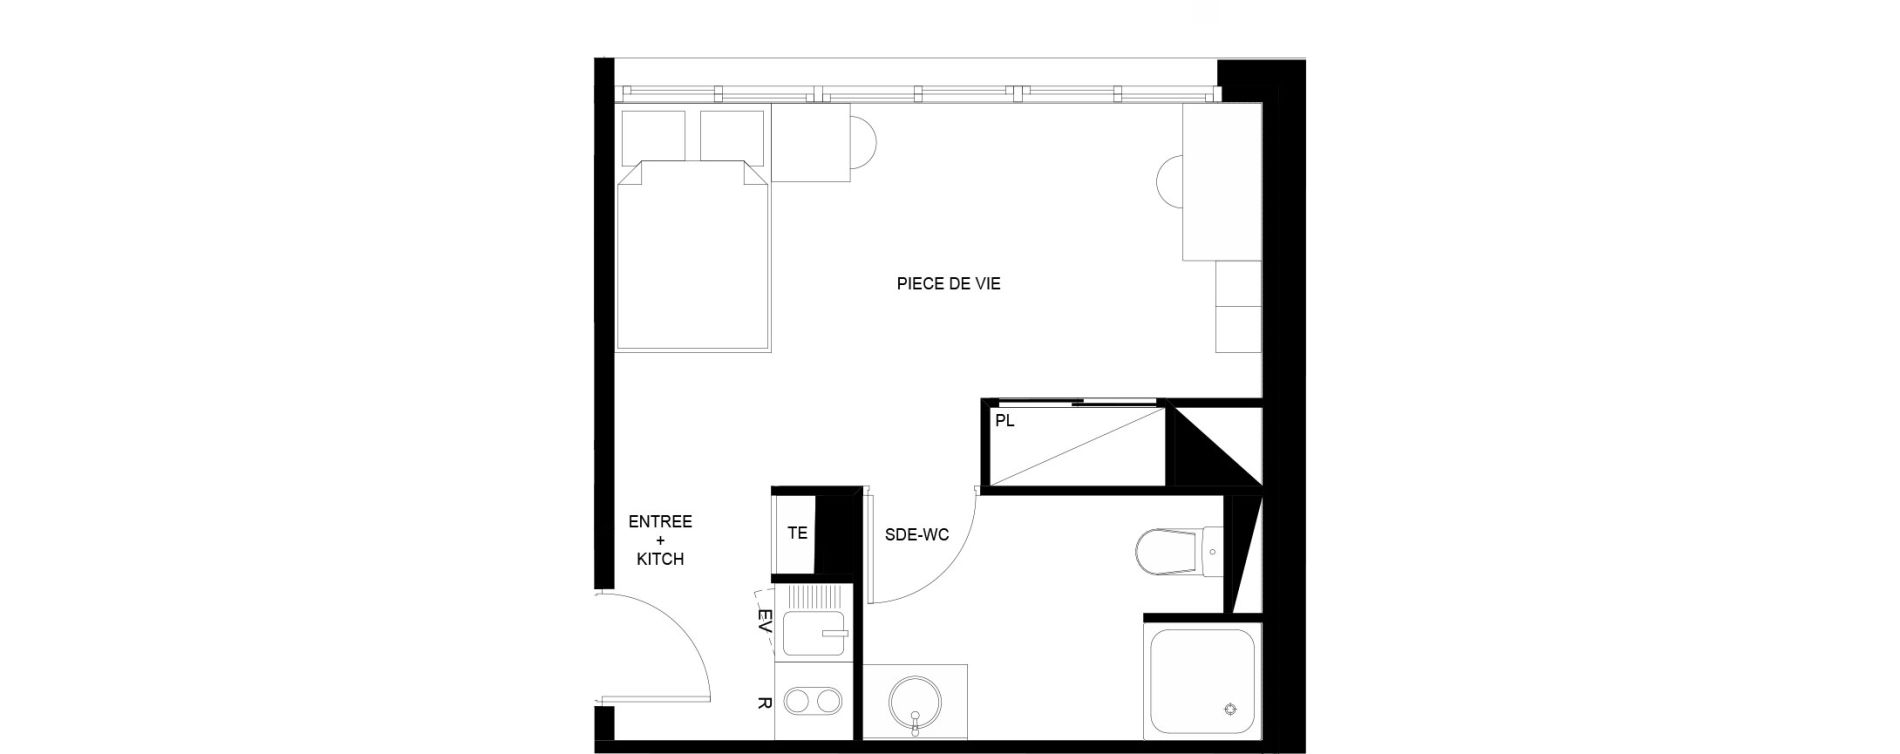 Appartement T1 meubl&eacute; de 22,58 m2 au Mans Nationale